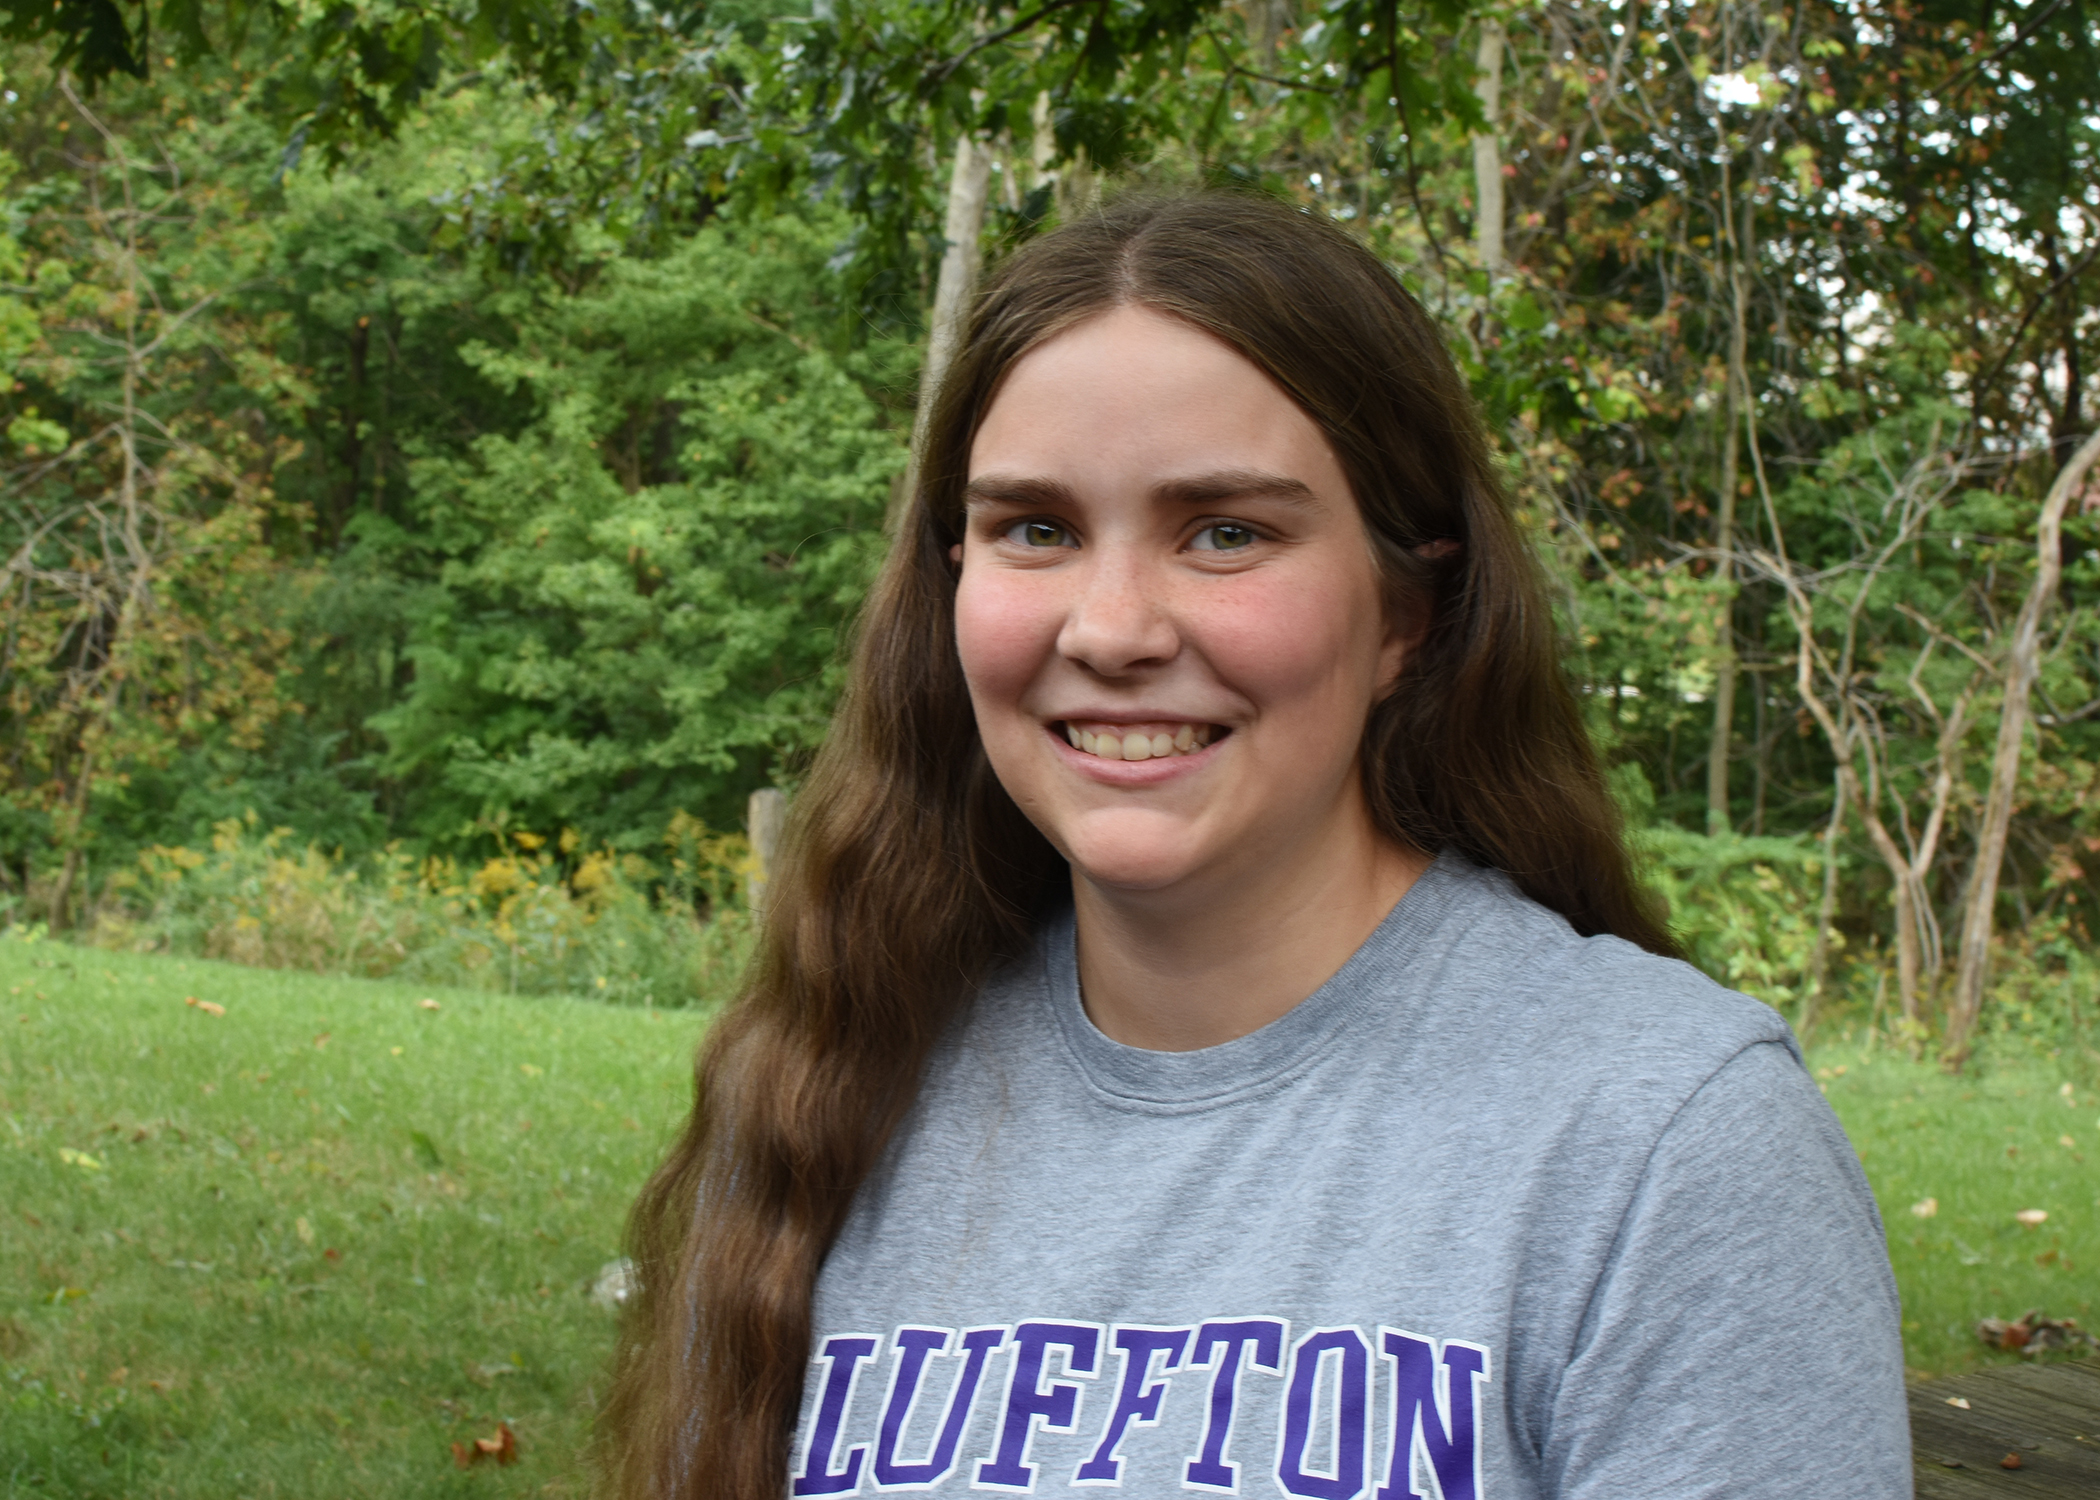 April Horton ’20, a physics major from Findlay, Ohio